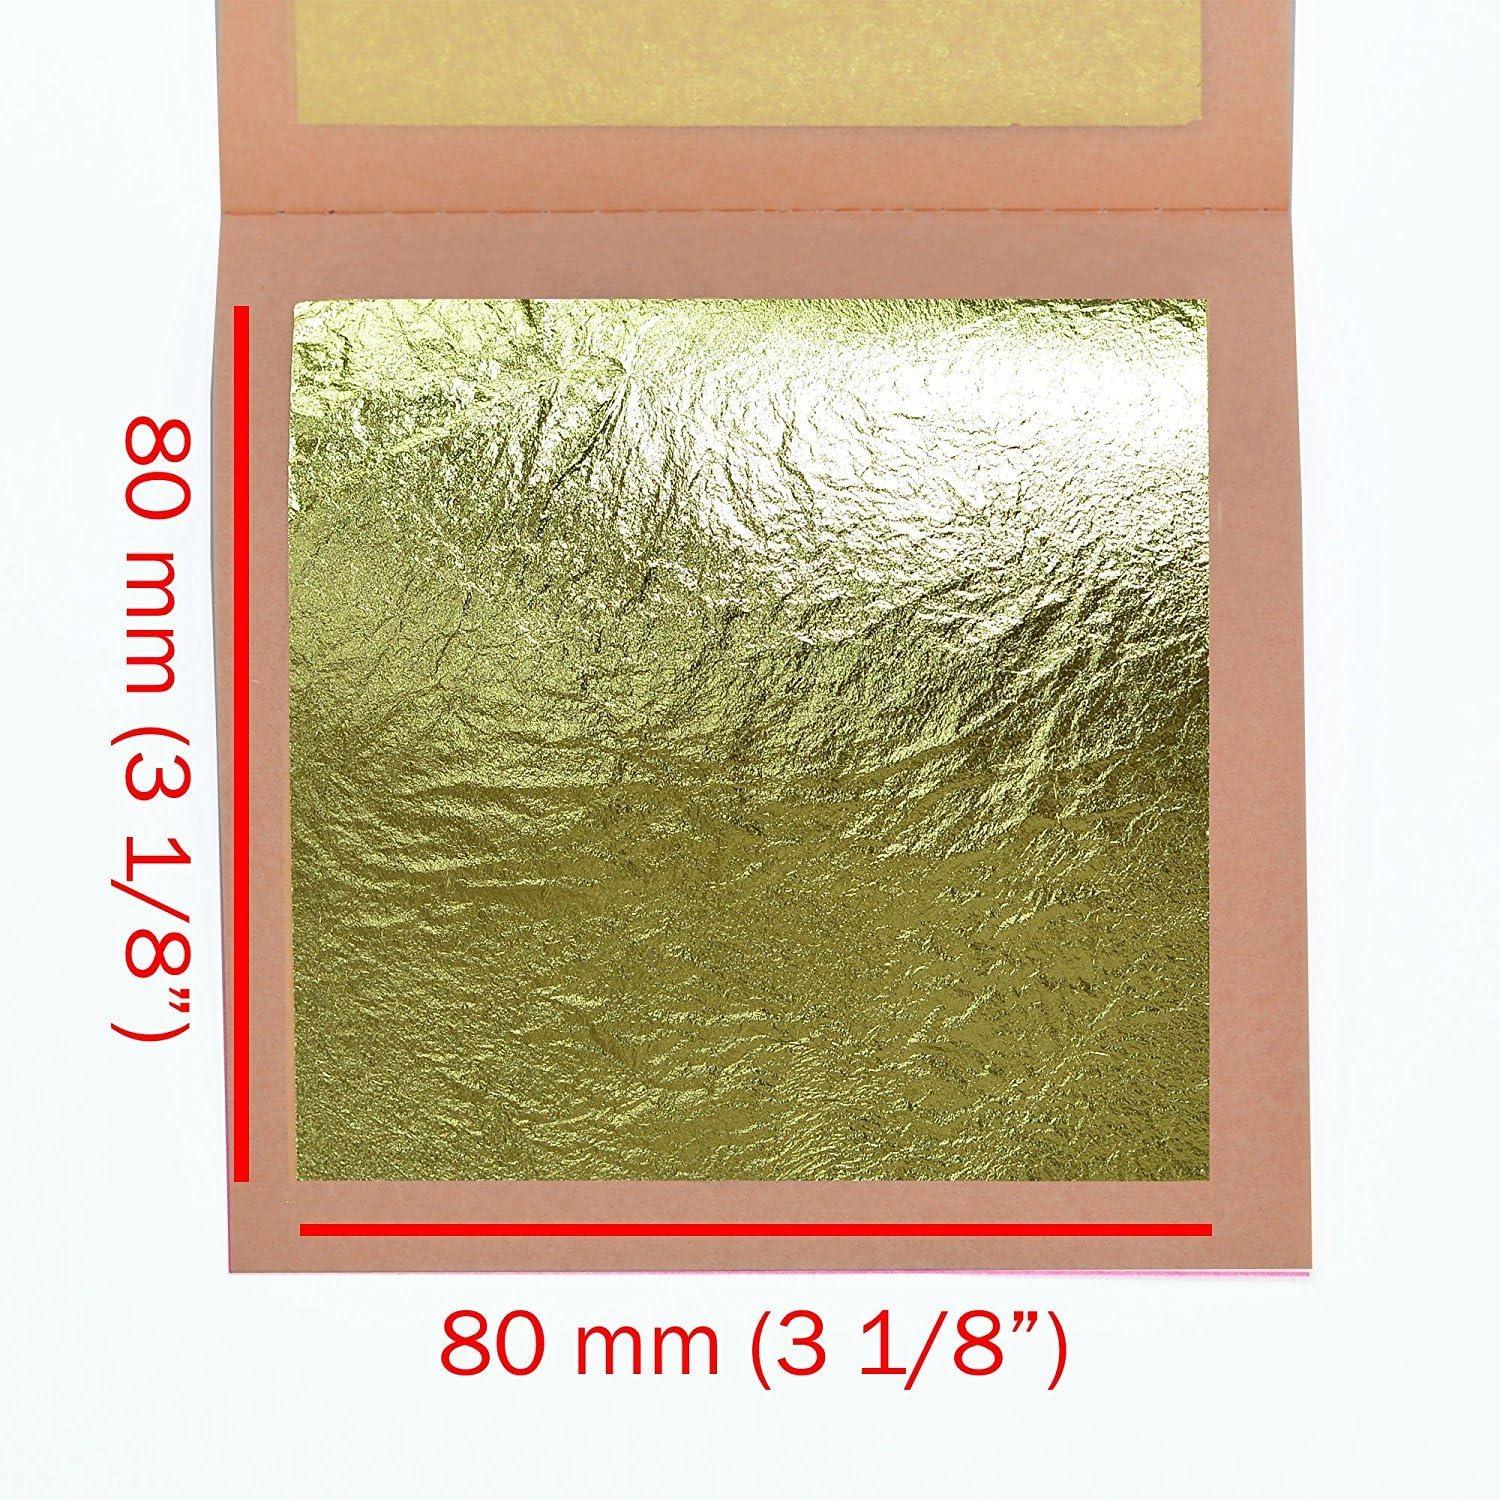  Barnabas Blattgold: Variegated Gold Leaf Sheets for